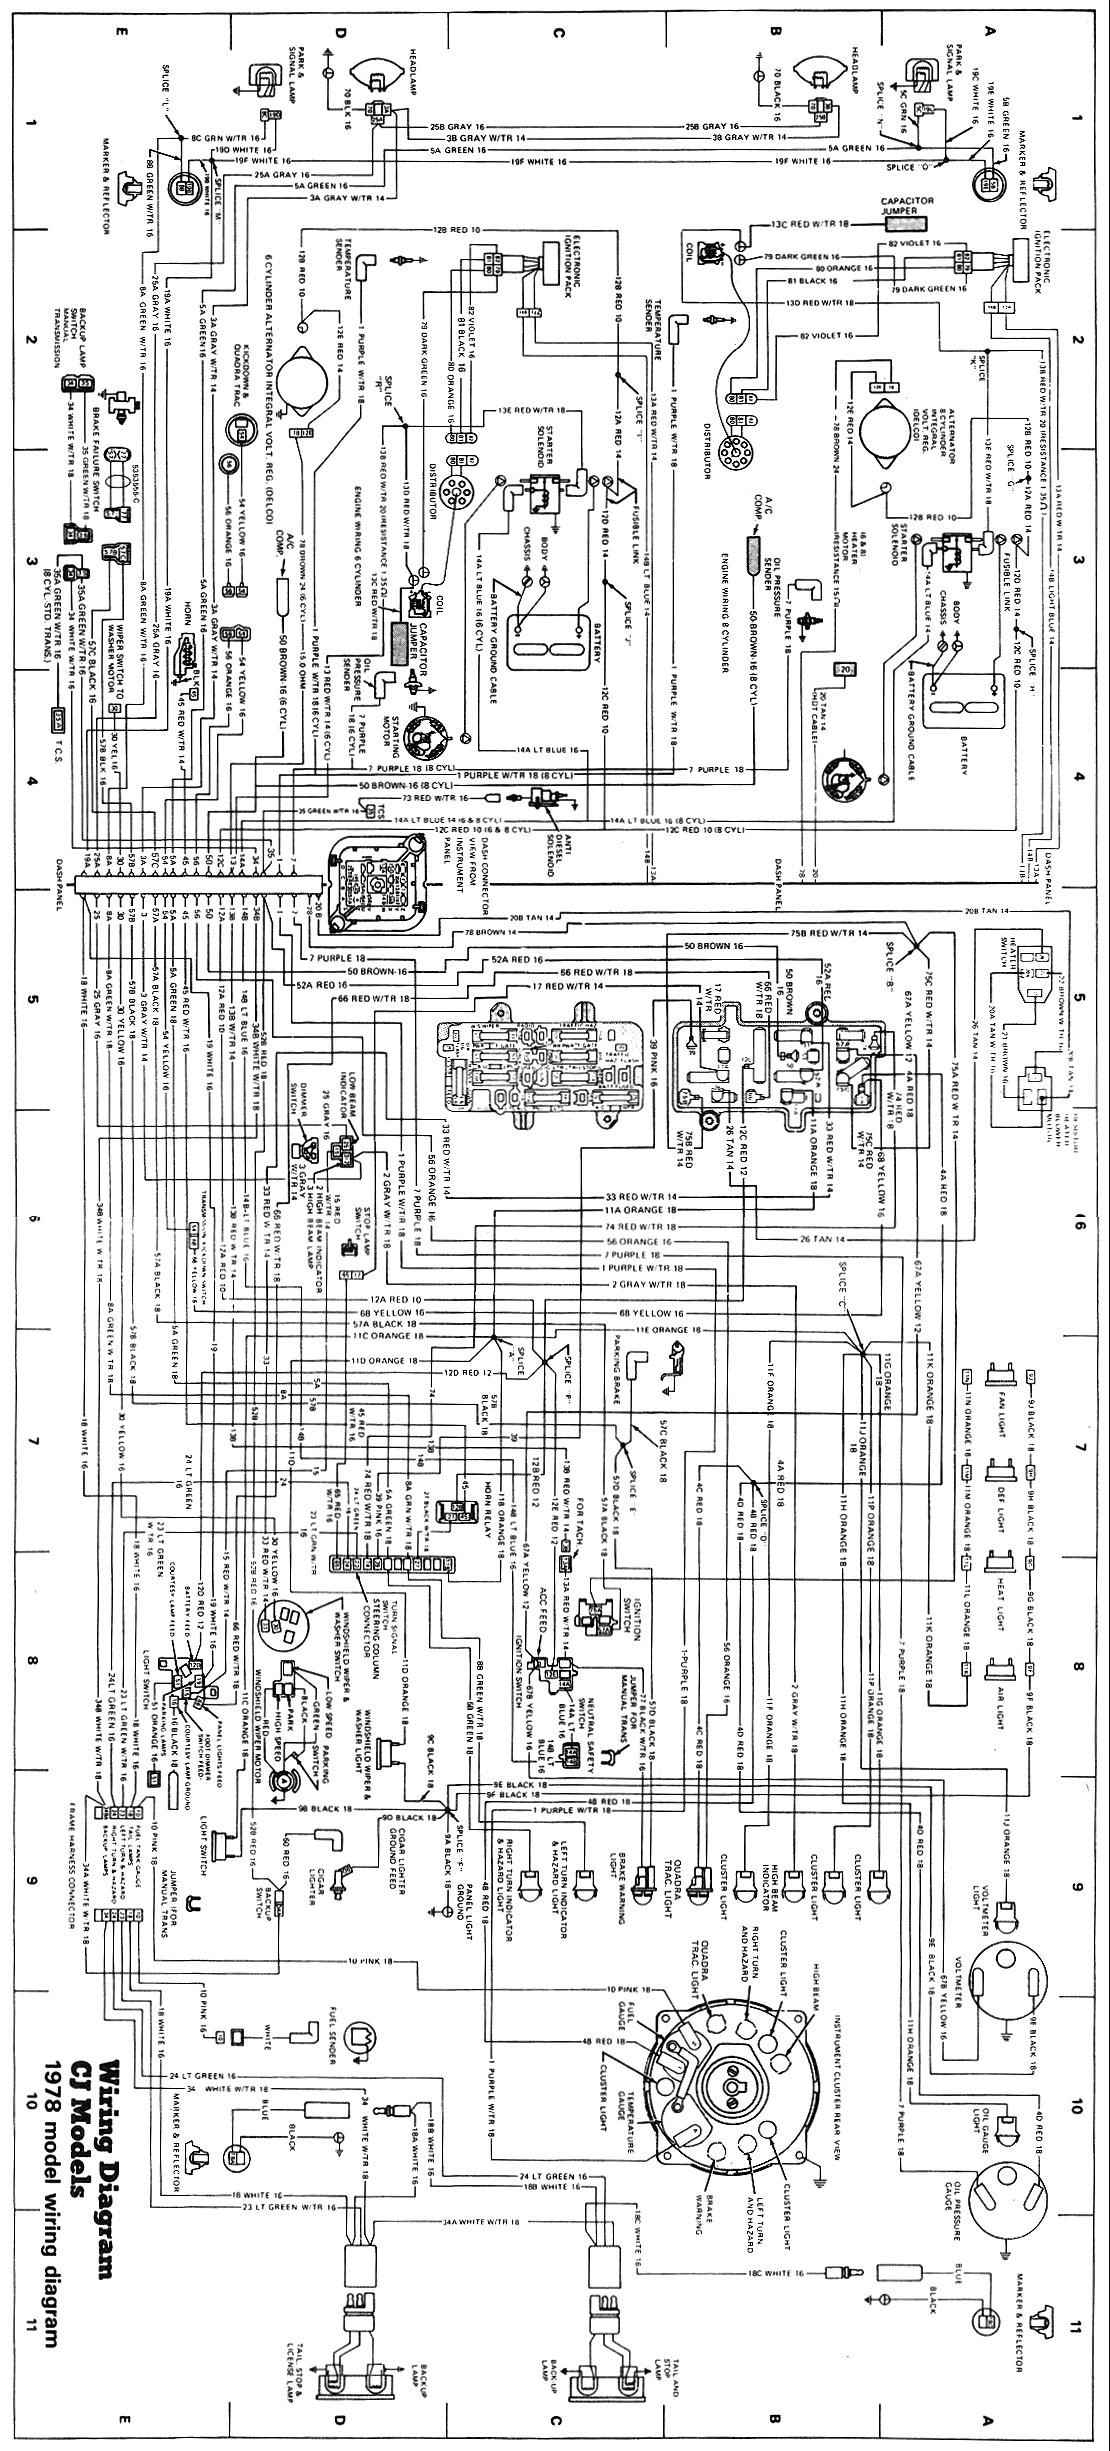 Jeep Engine Parts Diagram Wiring Schematics Of Jeep Engine Parts Diagram